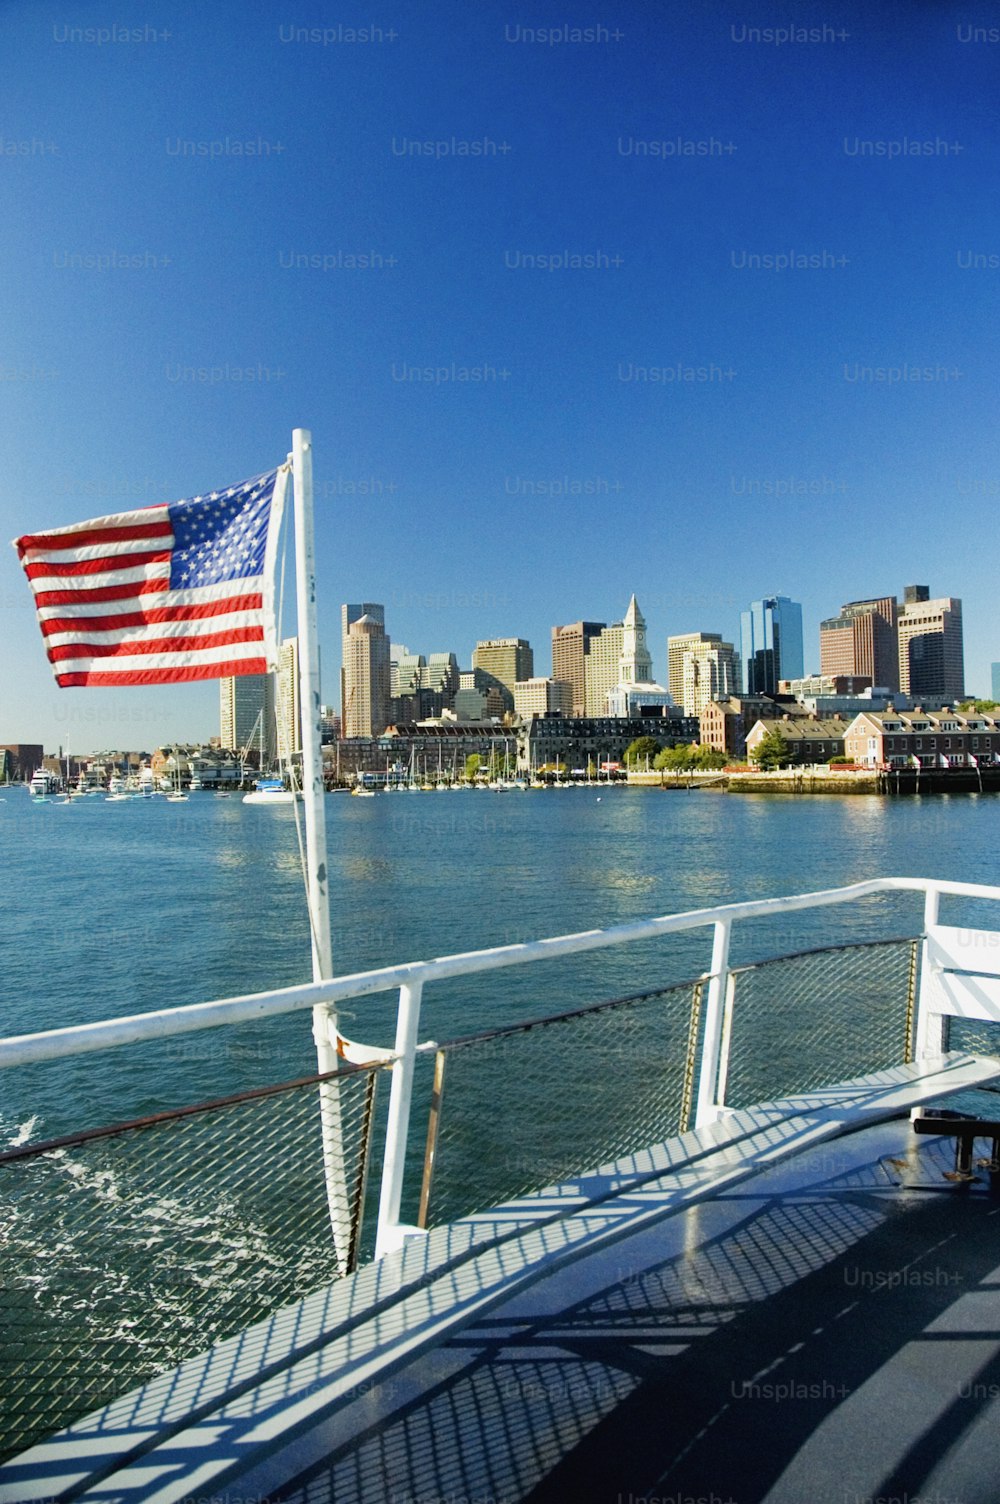 Una bandiera americana su una barca nell'acqua